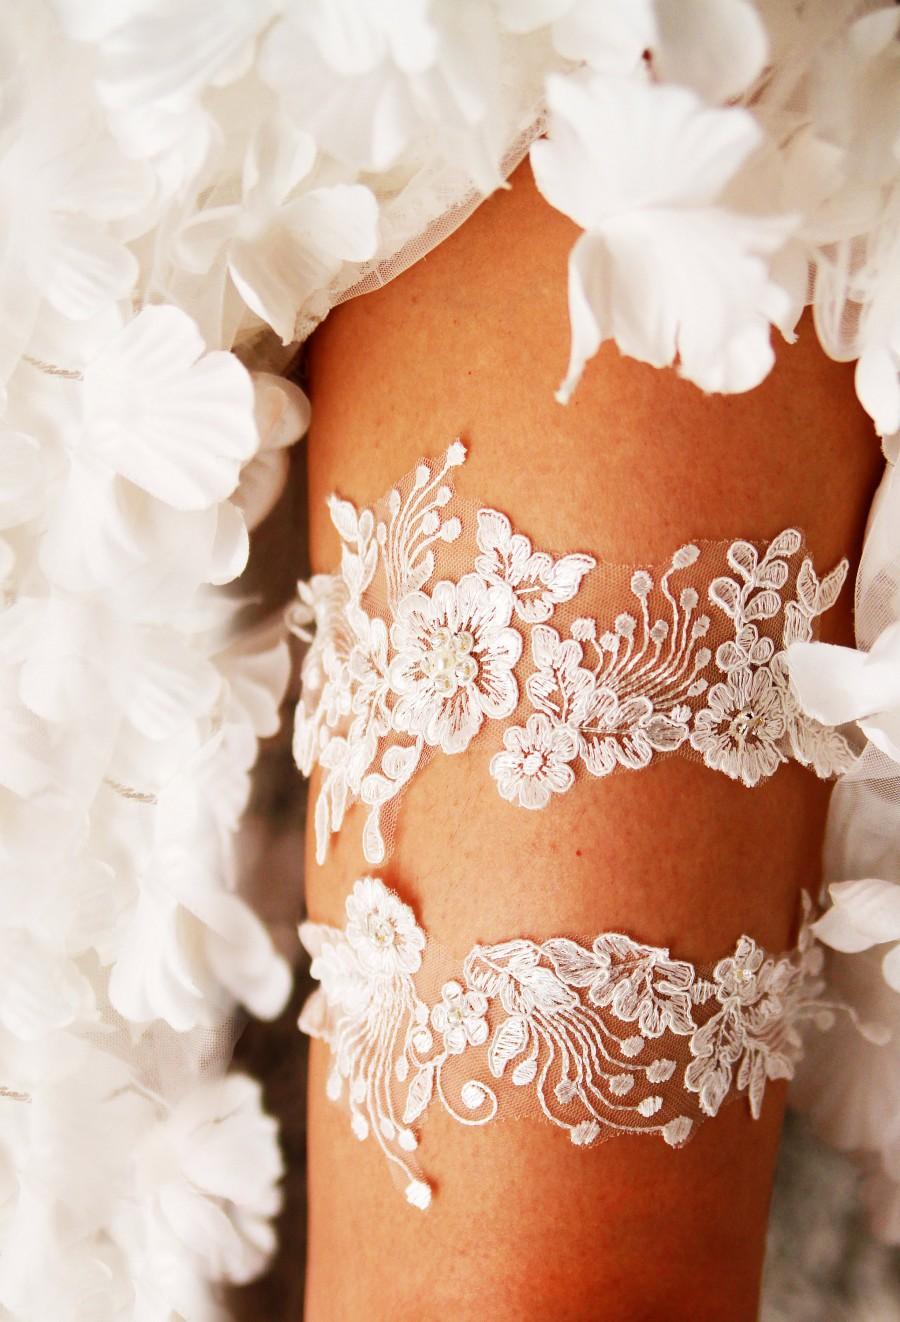 Wedding - Ivory Lace Garter Wedding Garter Bridal Garter Set - Vintage Inspired Garter Rustic Garter Bohemian Garter Boho Garter Prom Garter Belt